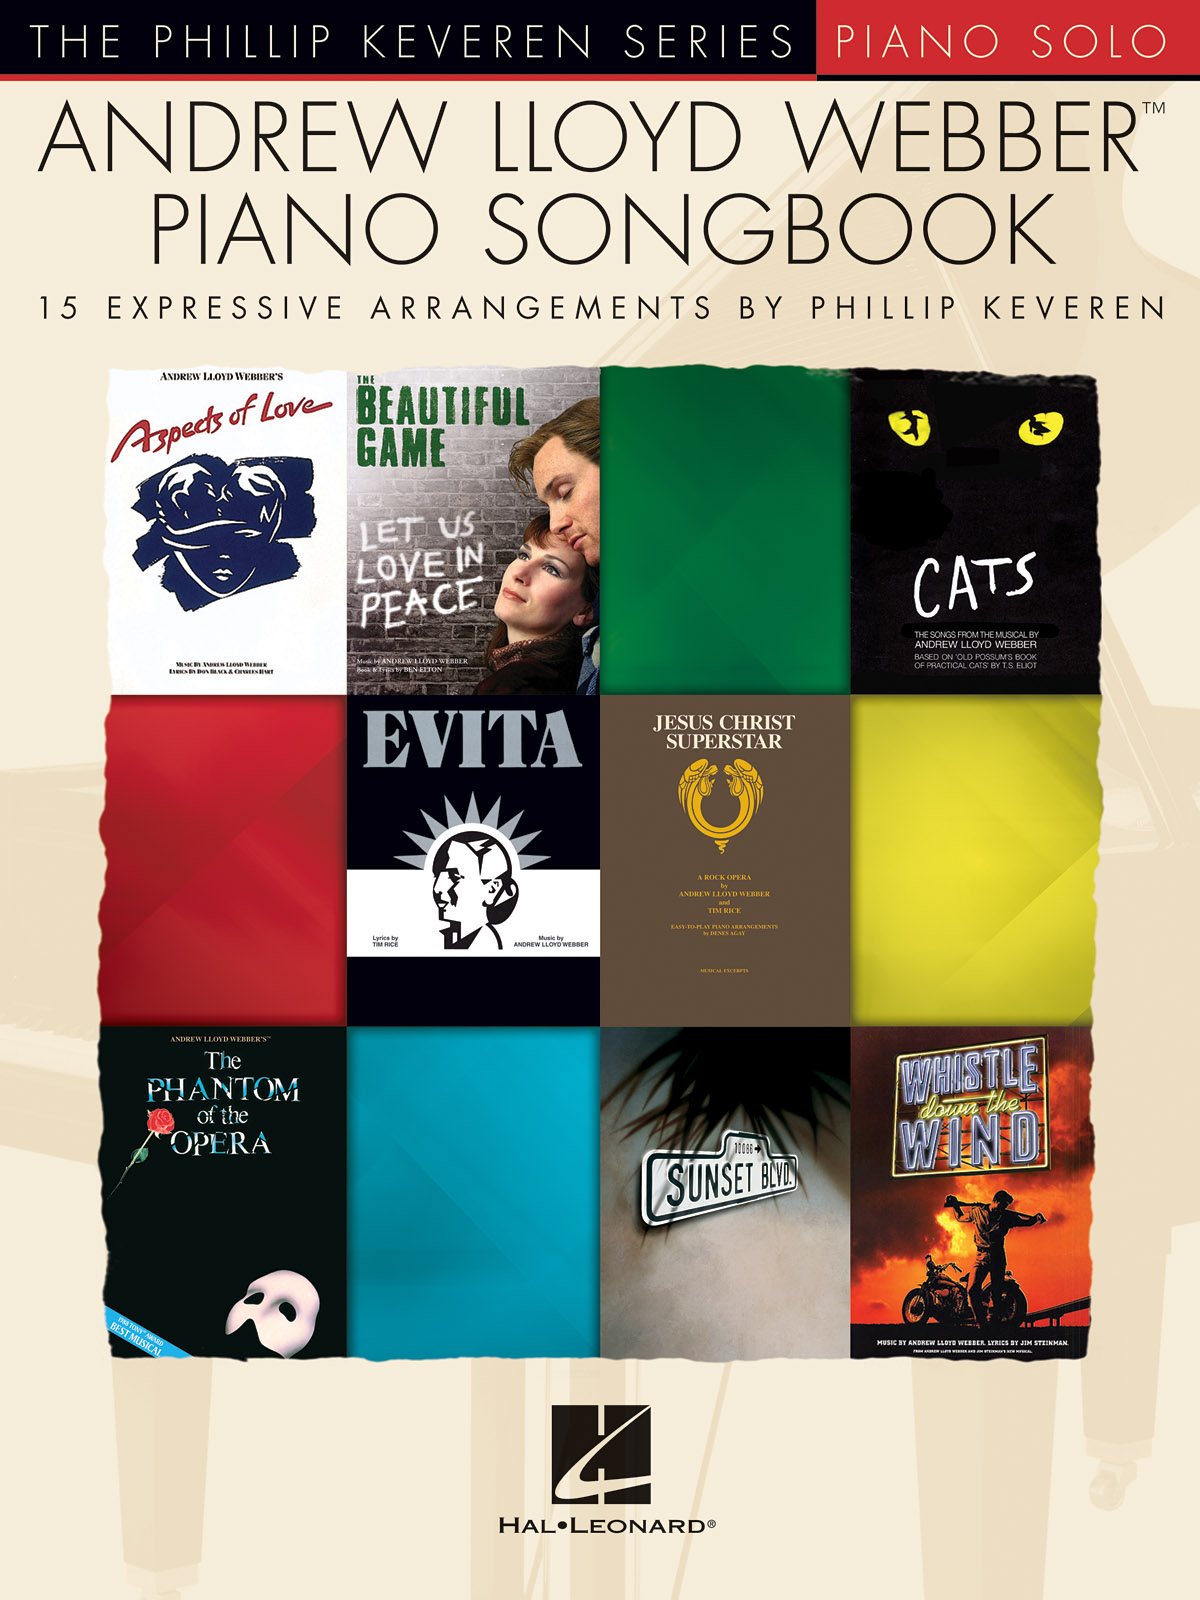 Andrew Lloyd Webber Piano Songbook - filmové melodie pro klavír